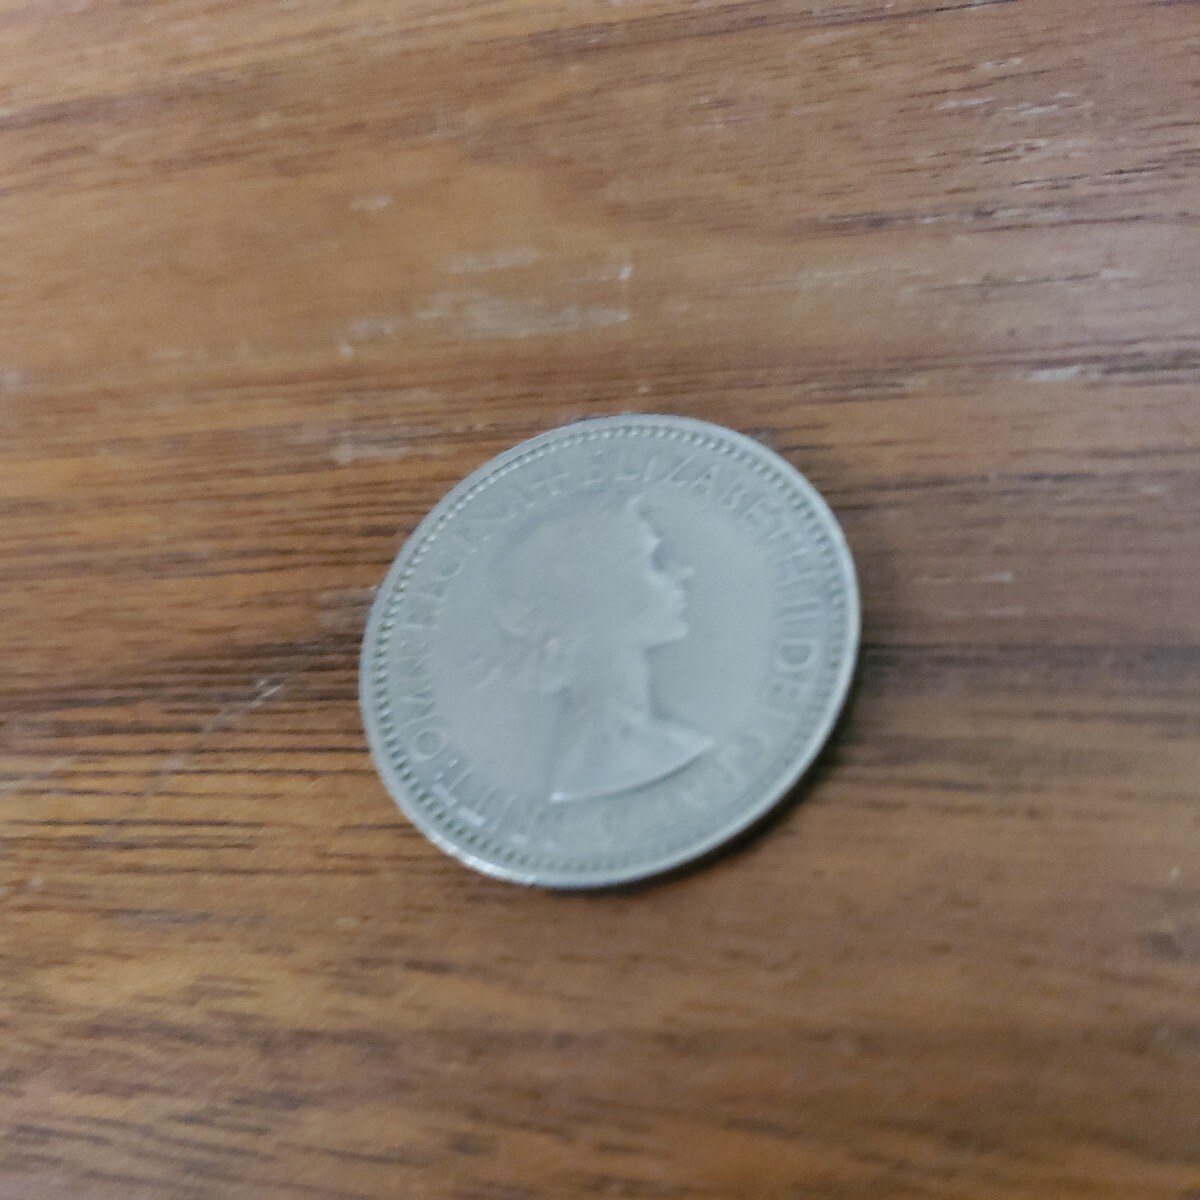 イギリス 1シリング白銅貨 1953 エリザベス2世_画像5